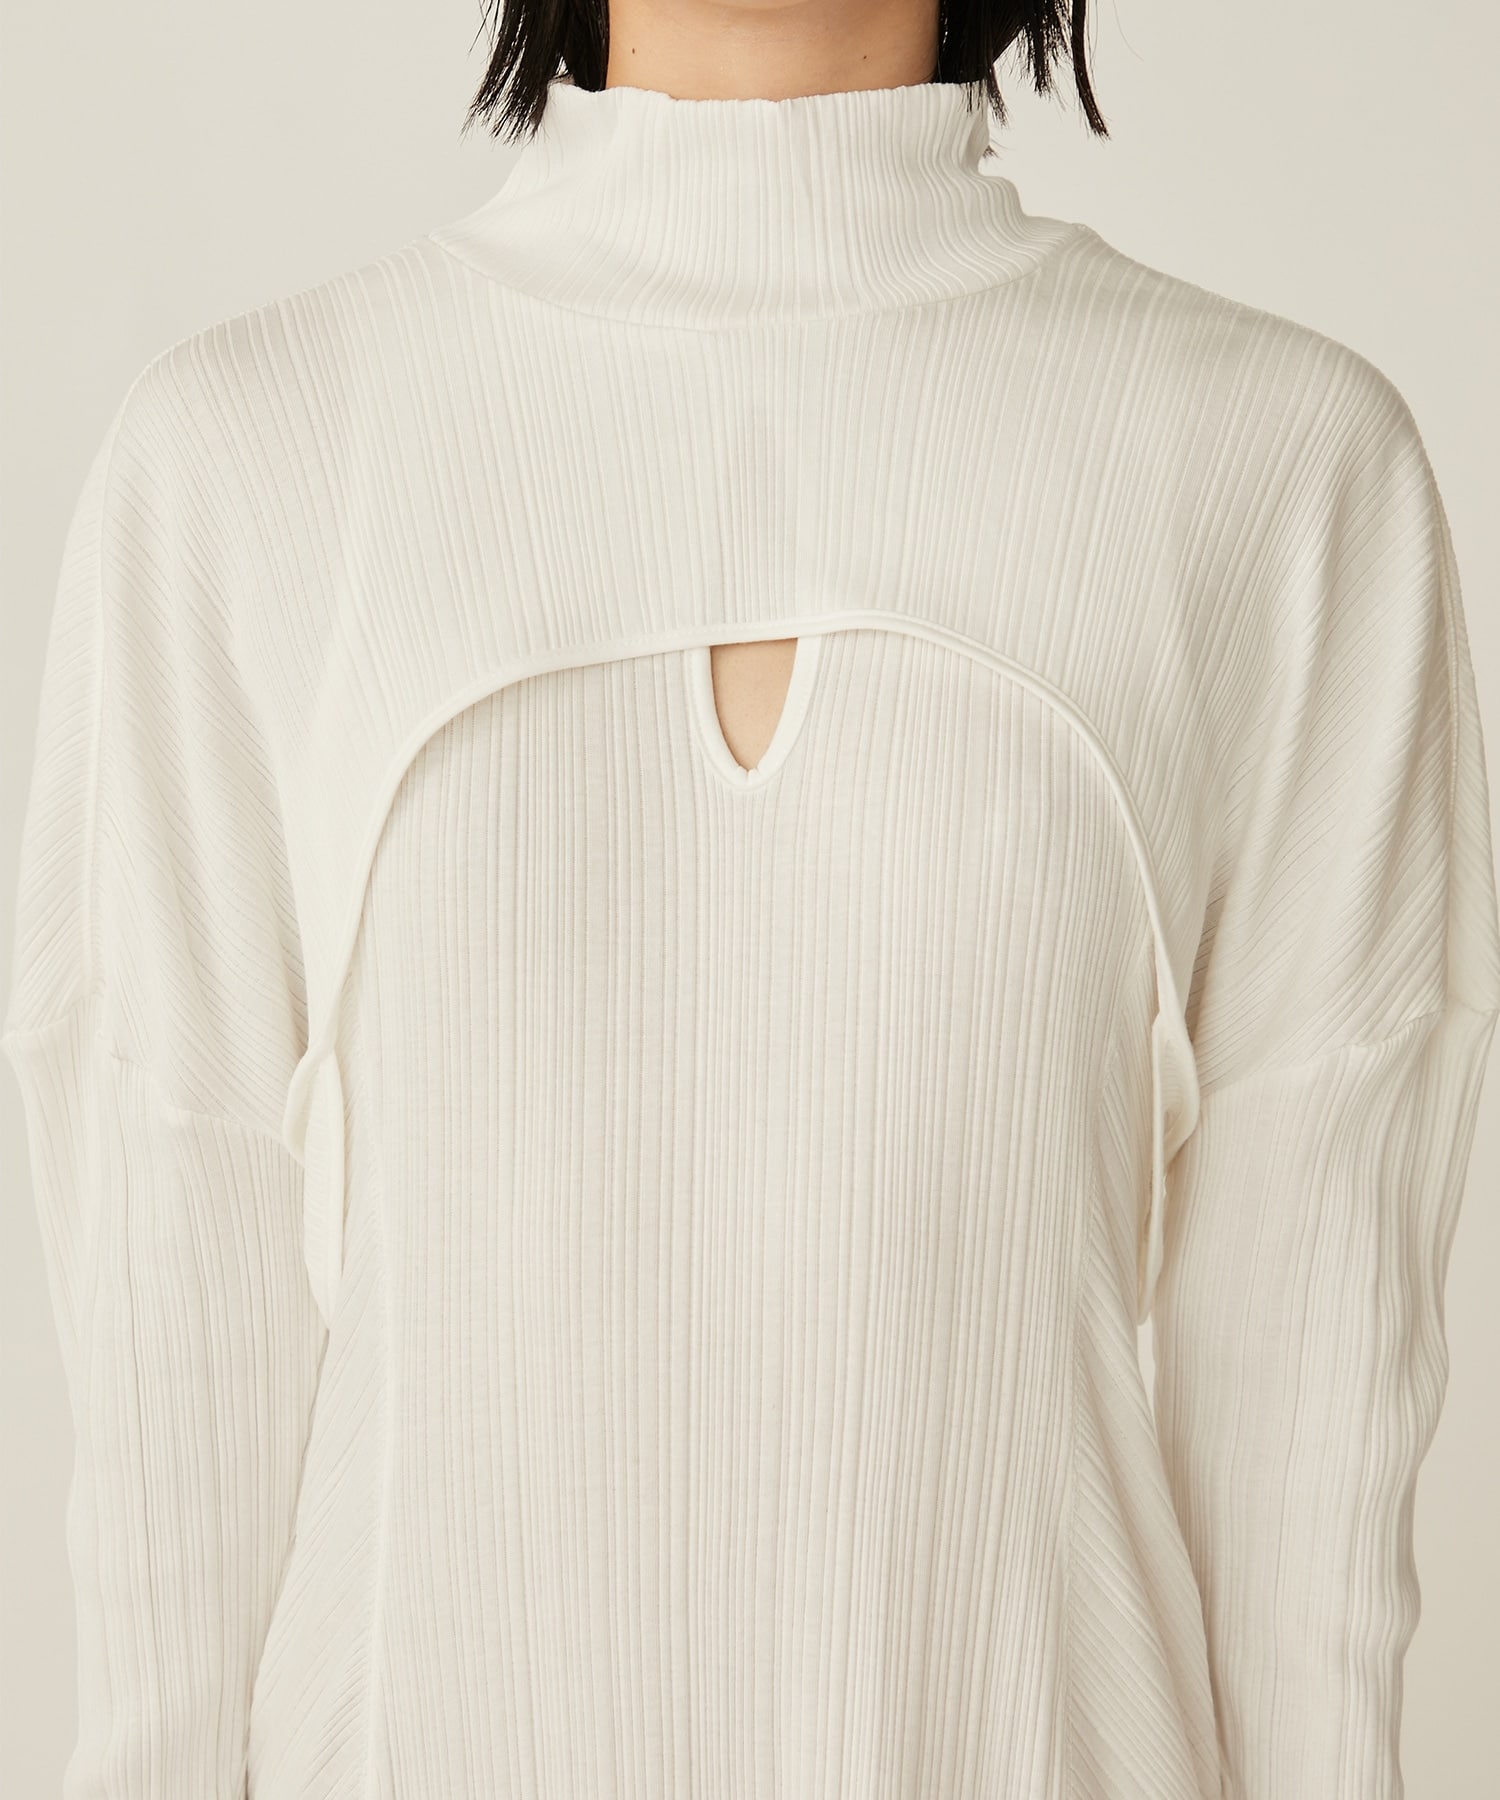 Random Ribbed Organic Cotton 2 way Dress(1 WHITE): Mame Kurogouchi